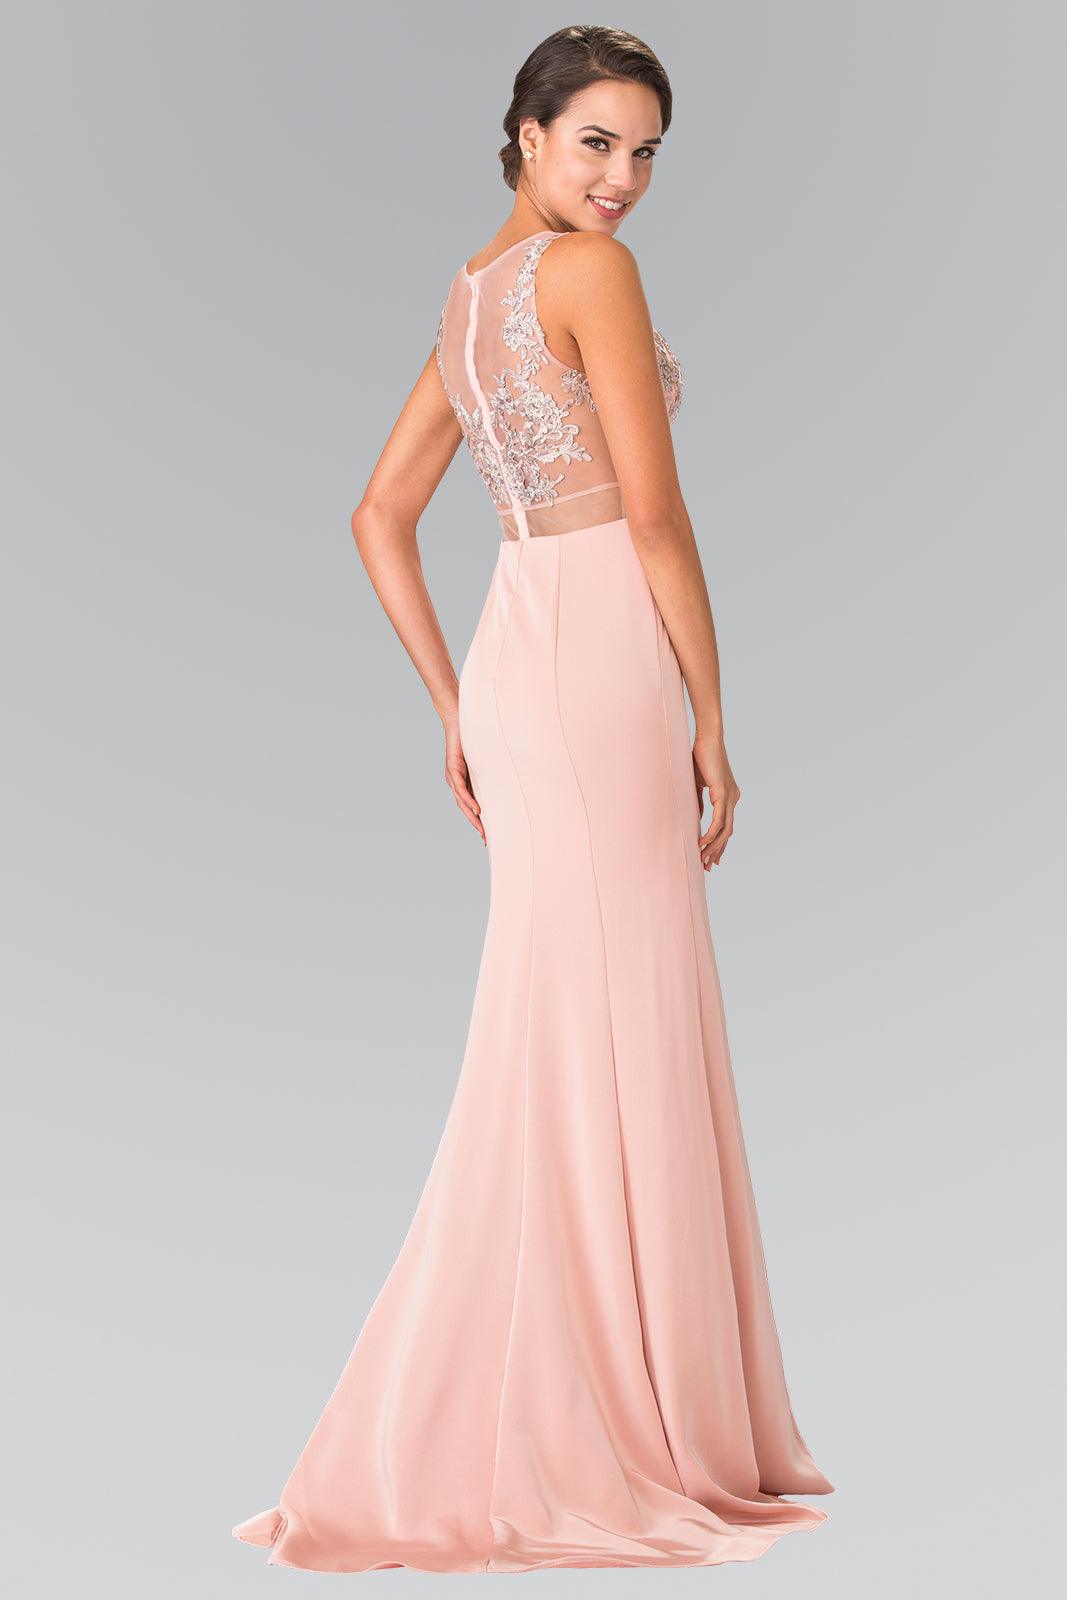 Long Formal Evening Prom Dress - The Dress Outlet Elizabeth K